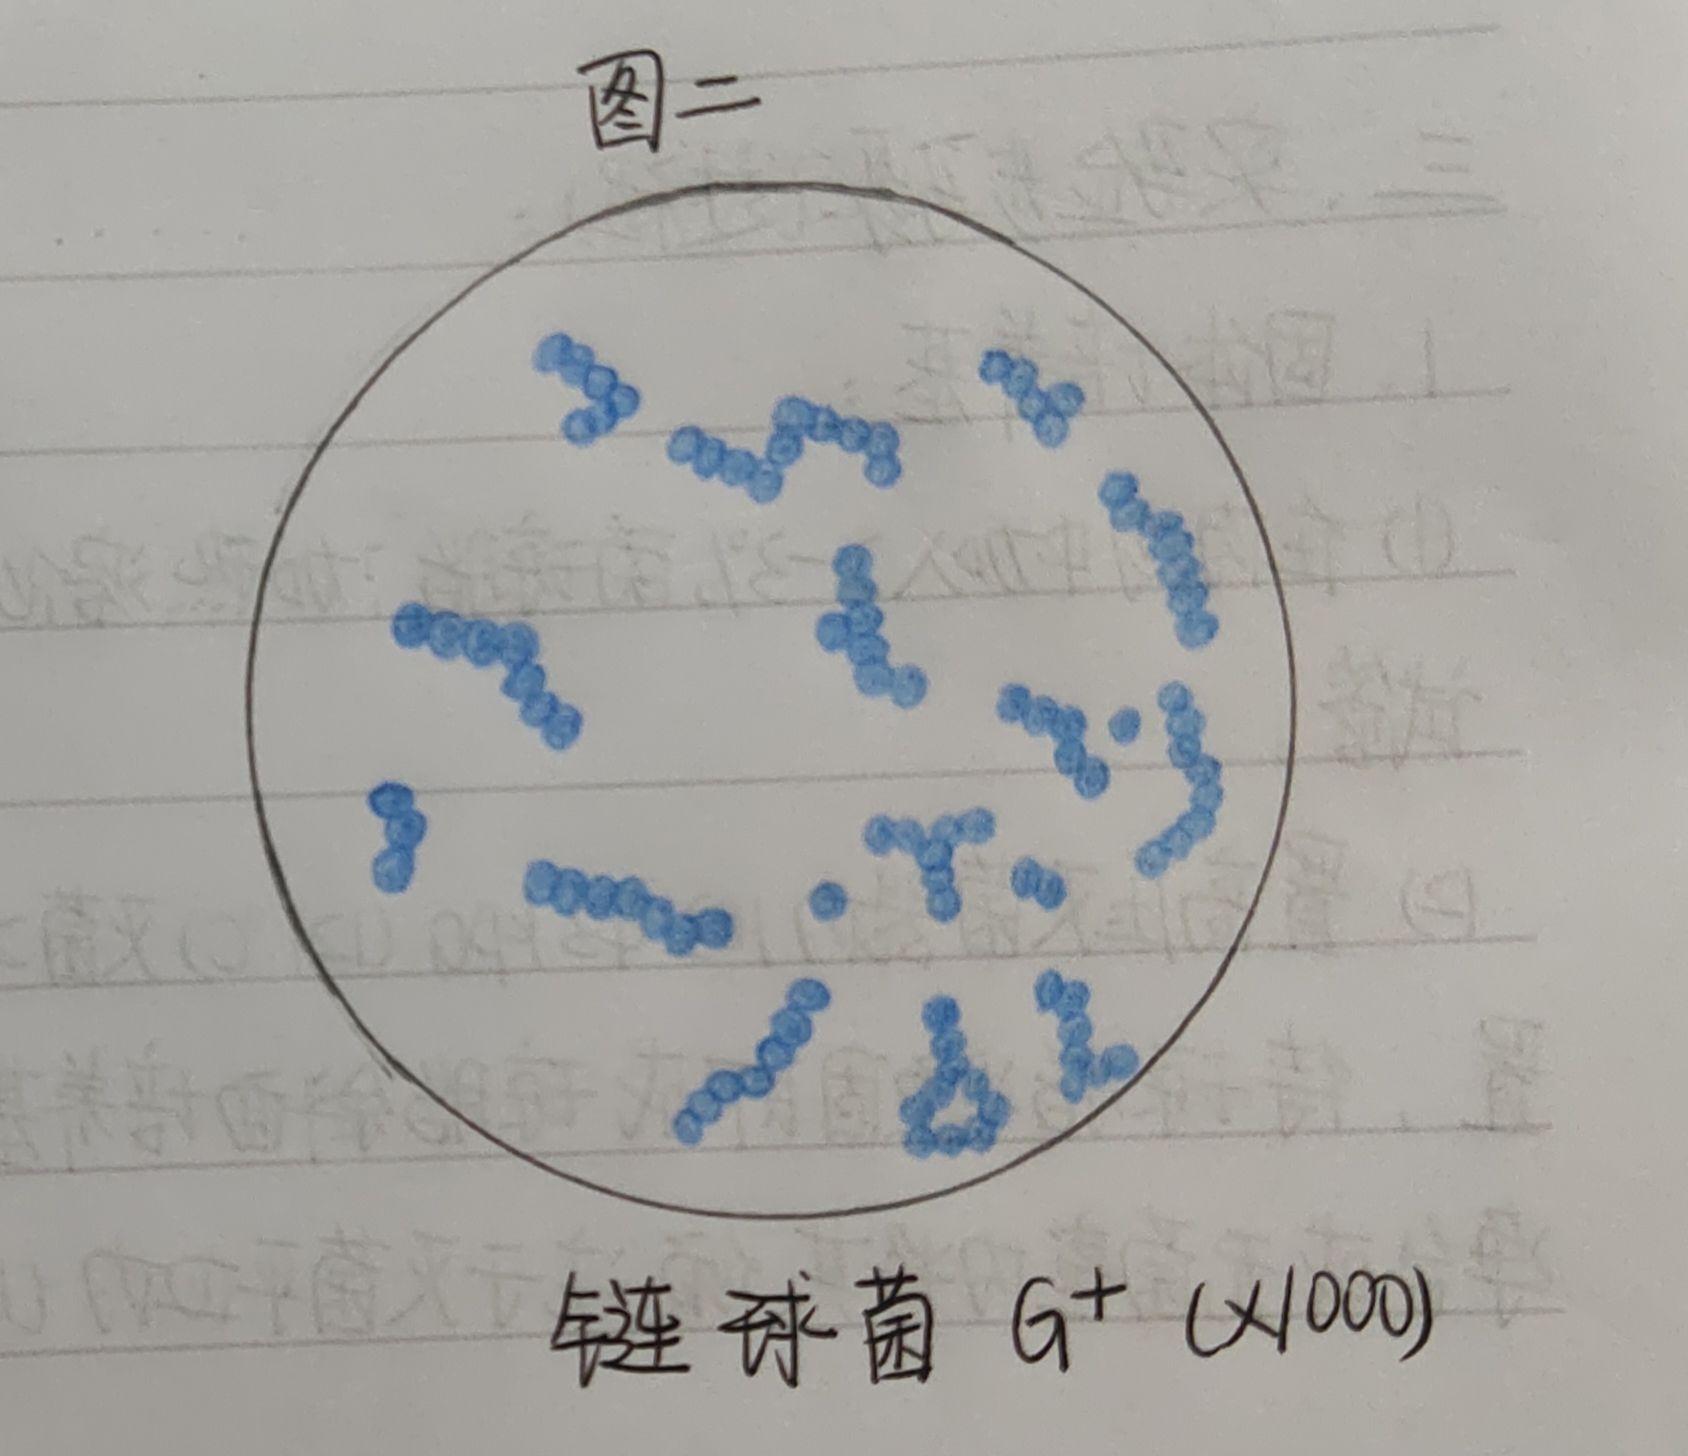 各位大神，有葡萄球菌，结核杆菌，大肠杆菌，蜡样芽孢杆菌，炭疽杆菌的红蓝铅笔手绘图吗？ - 知乎